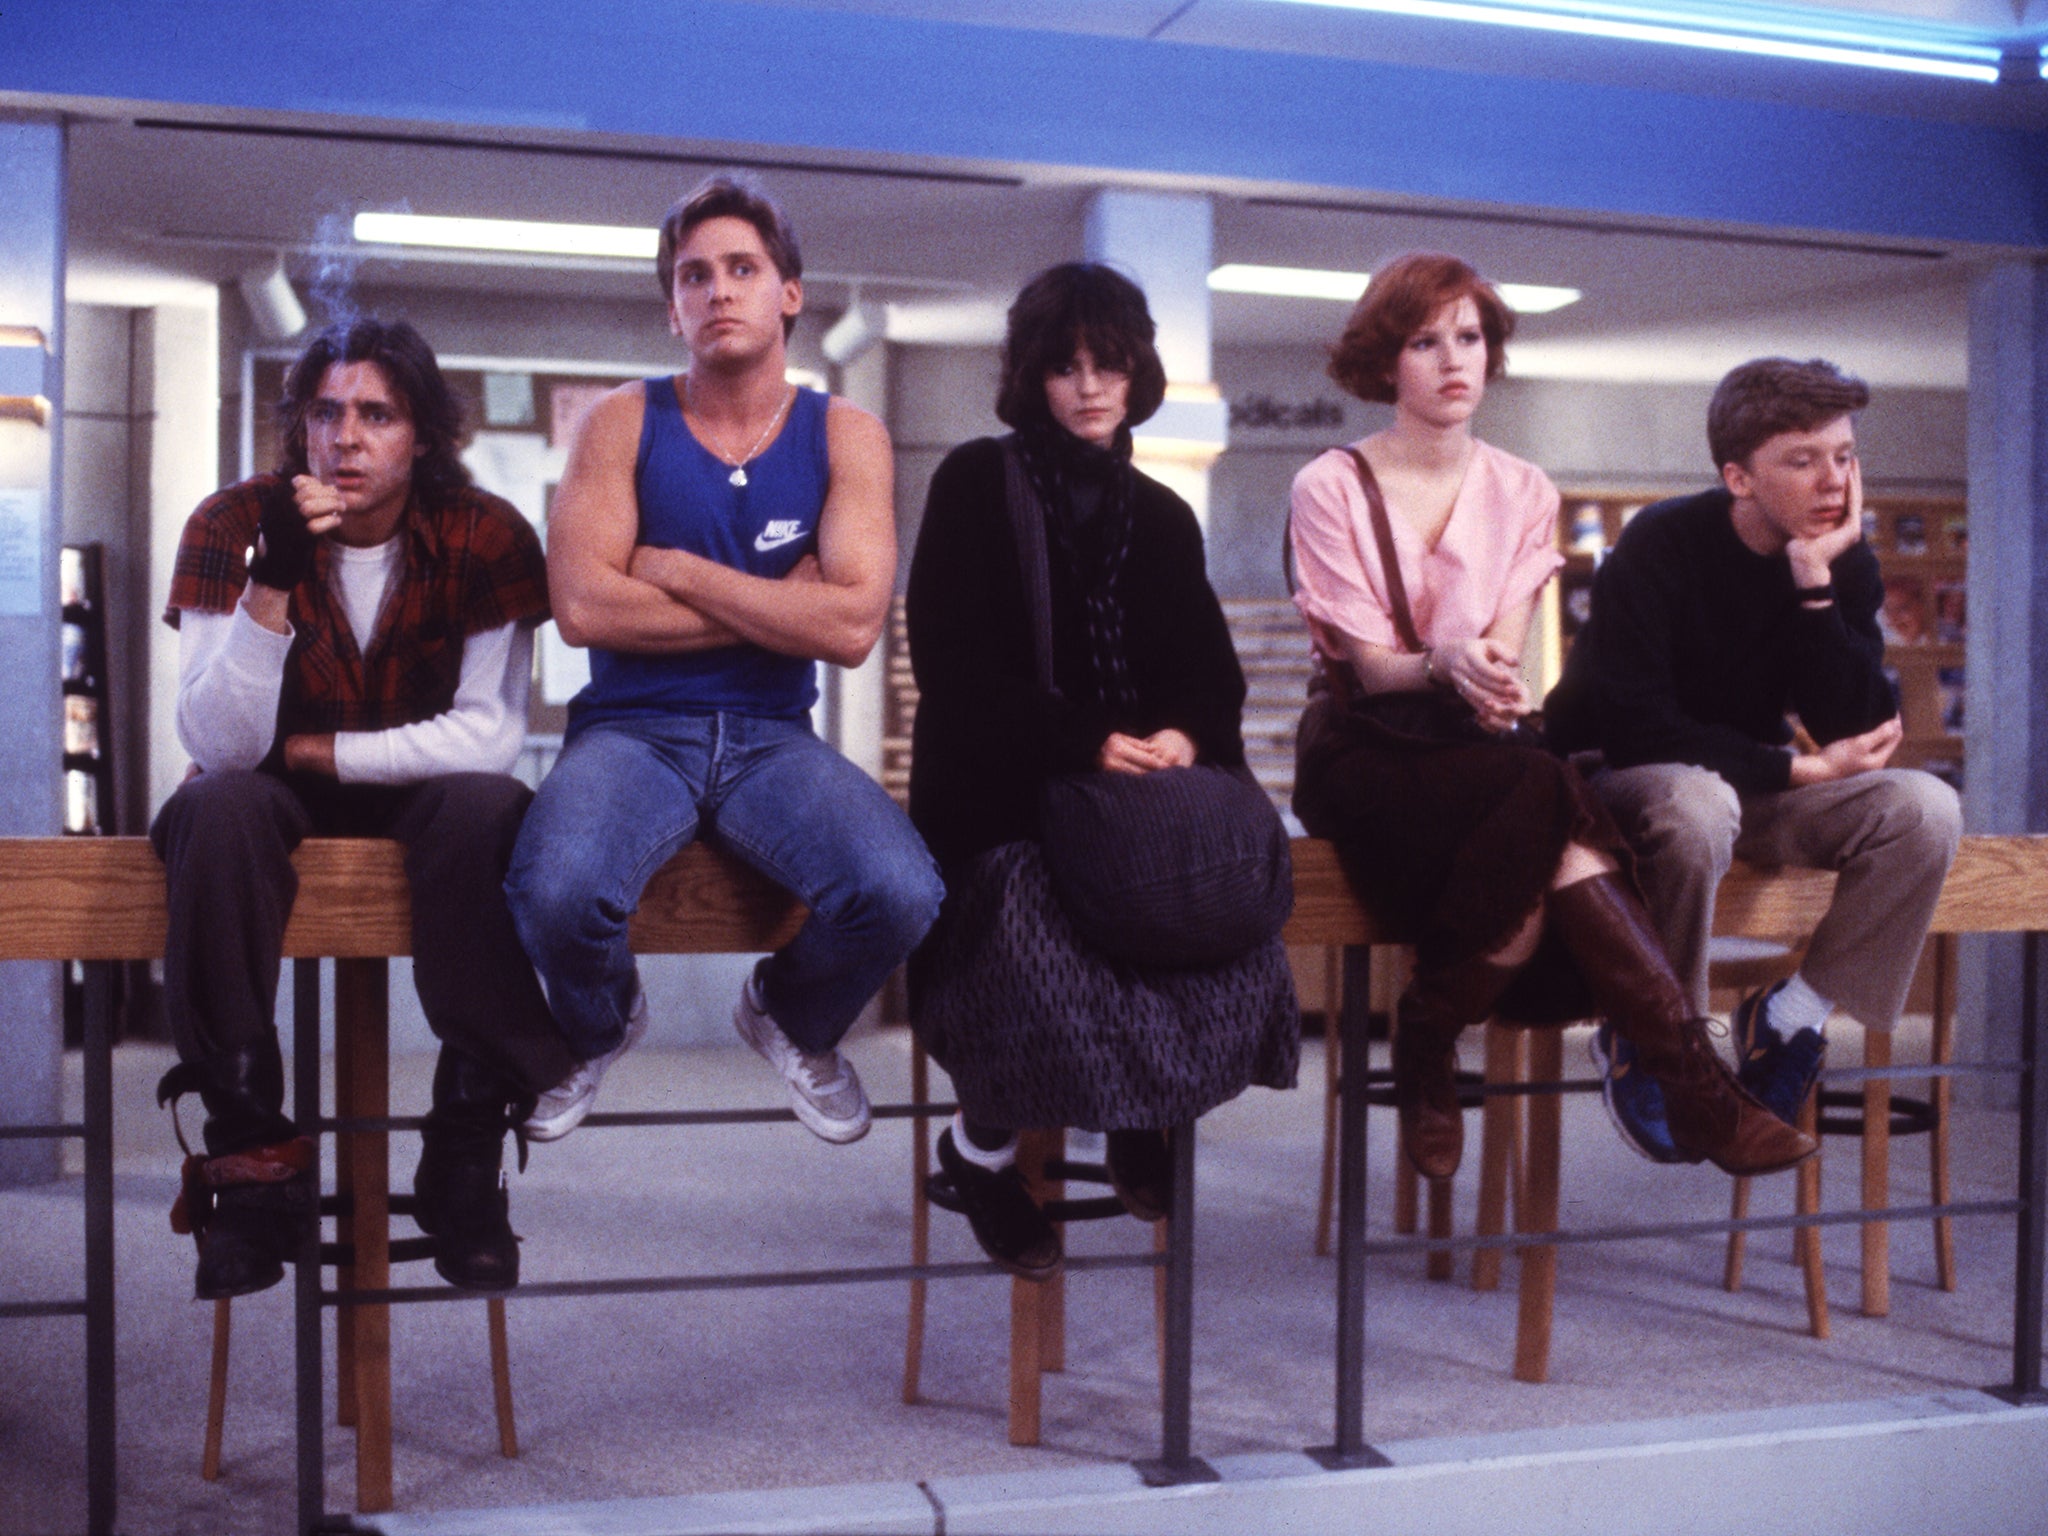 Hall (far right) alongside Judd Nelson, Emilio Estevez, Ally Sheedy and Molly Ringwald in ‘The Breakfast Club'